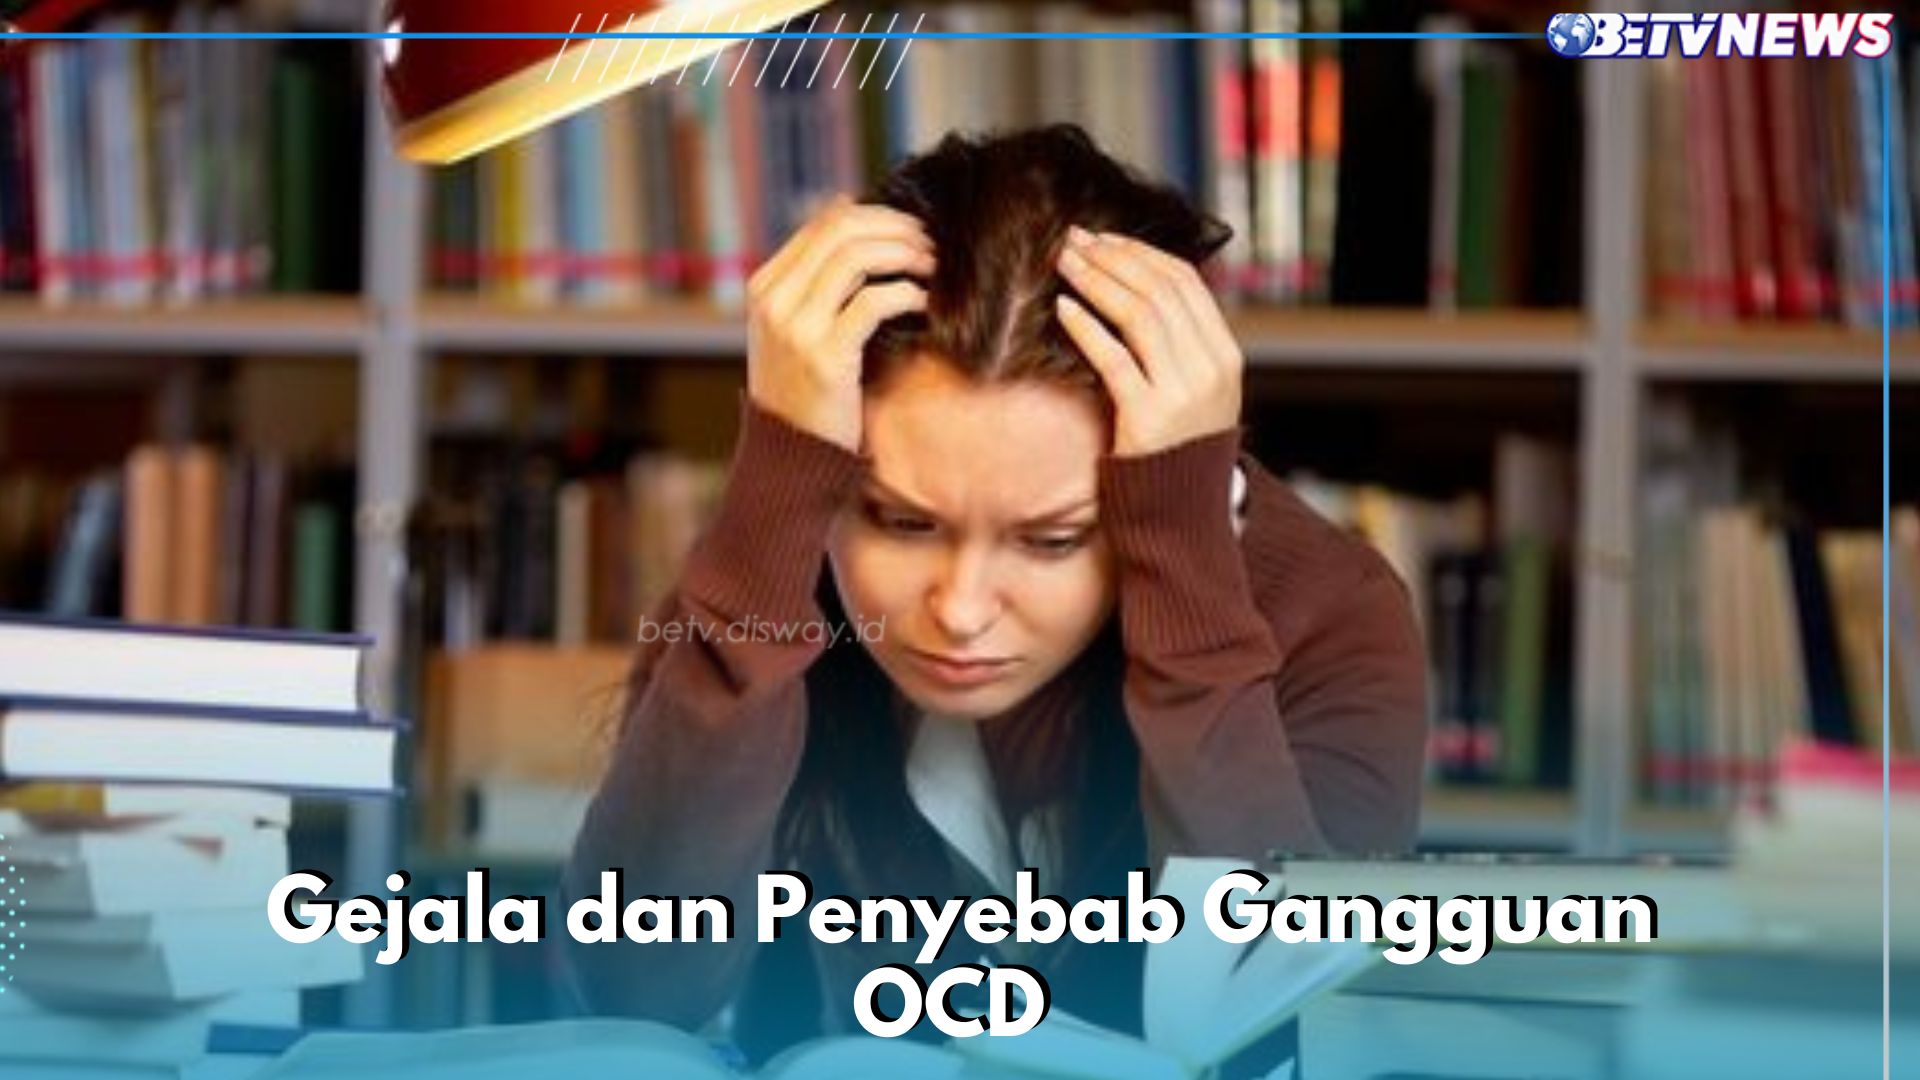 Gejala dan Penyebab Gangguan OCD yang Jarang Kamu ketahui